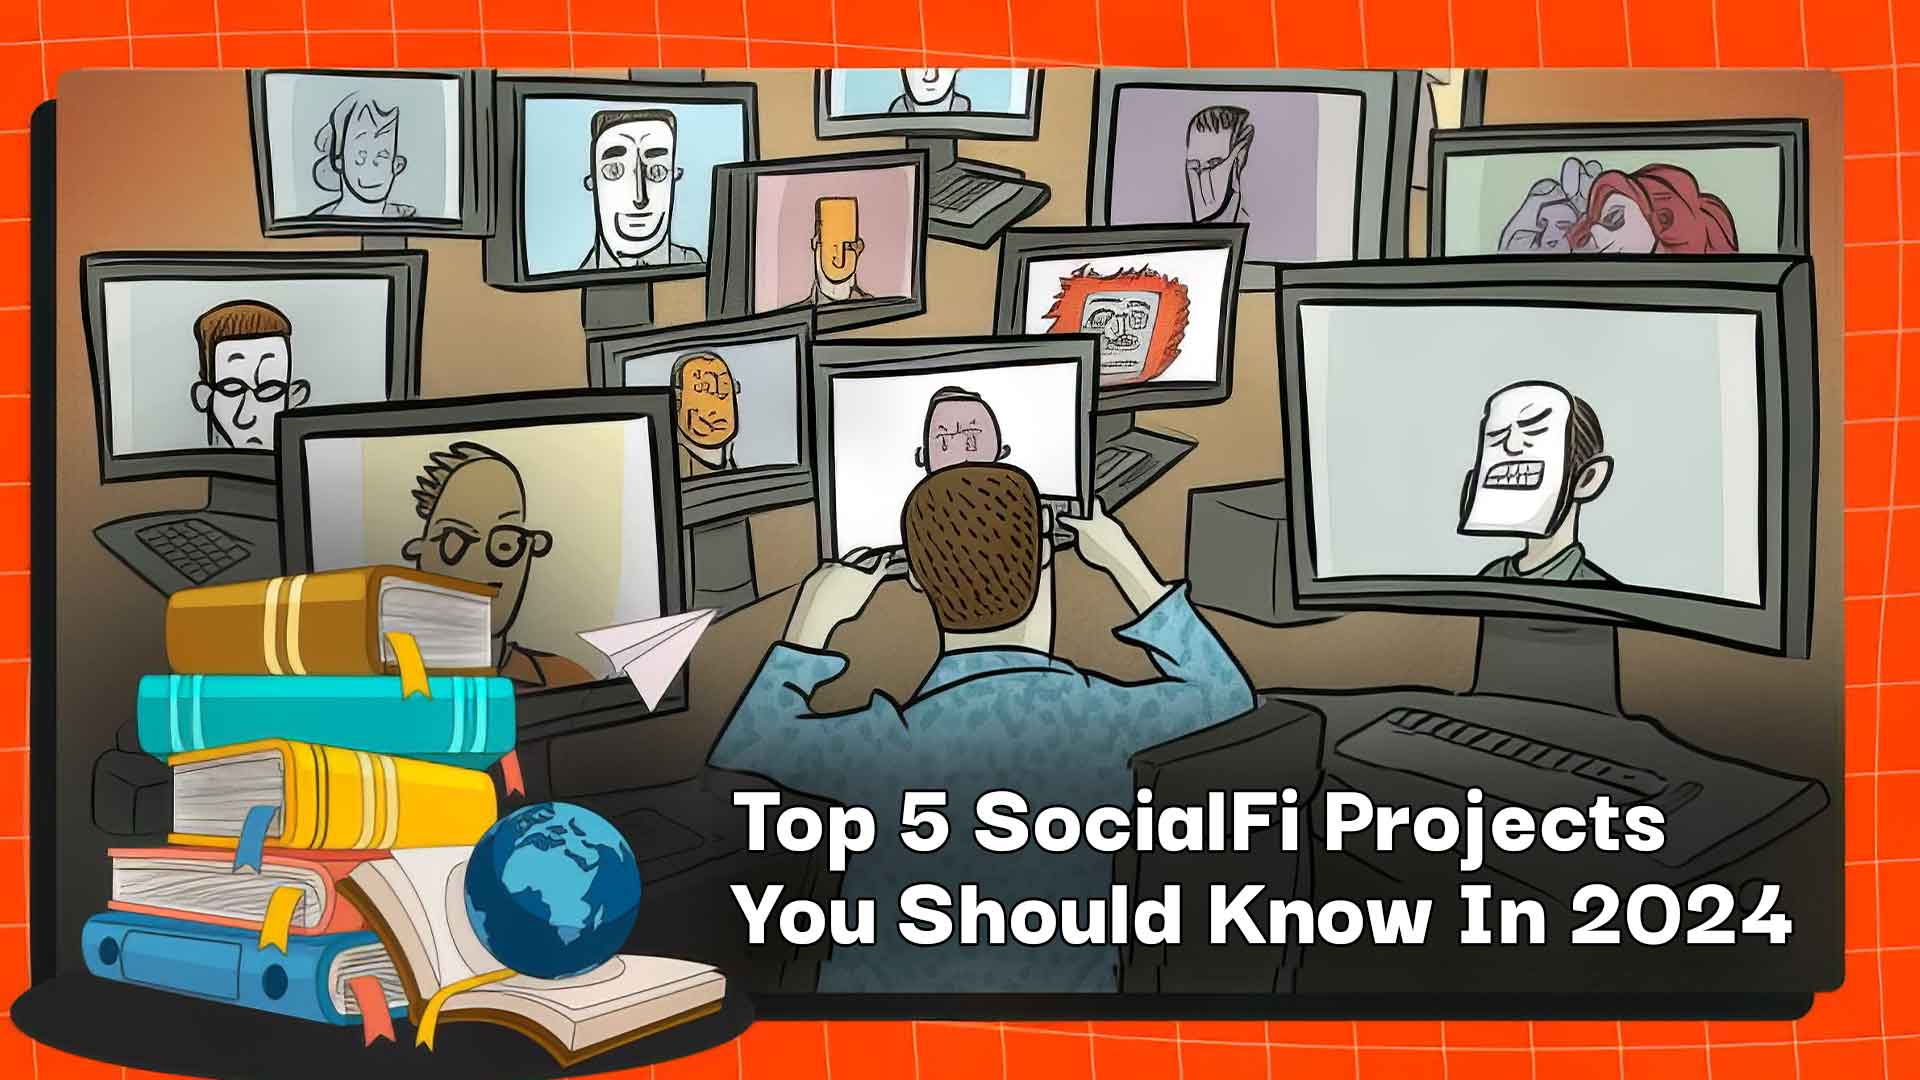 Die 5 besten SocialFi-Projekte, die Sie im Jahr 2024 kennen sollten 1